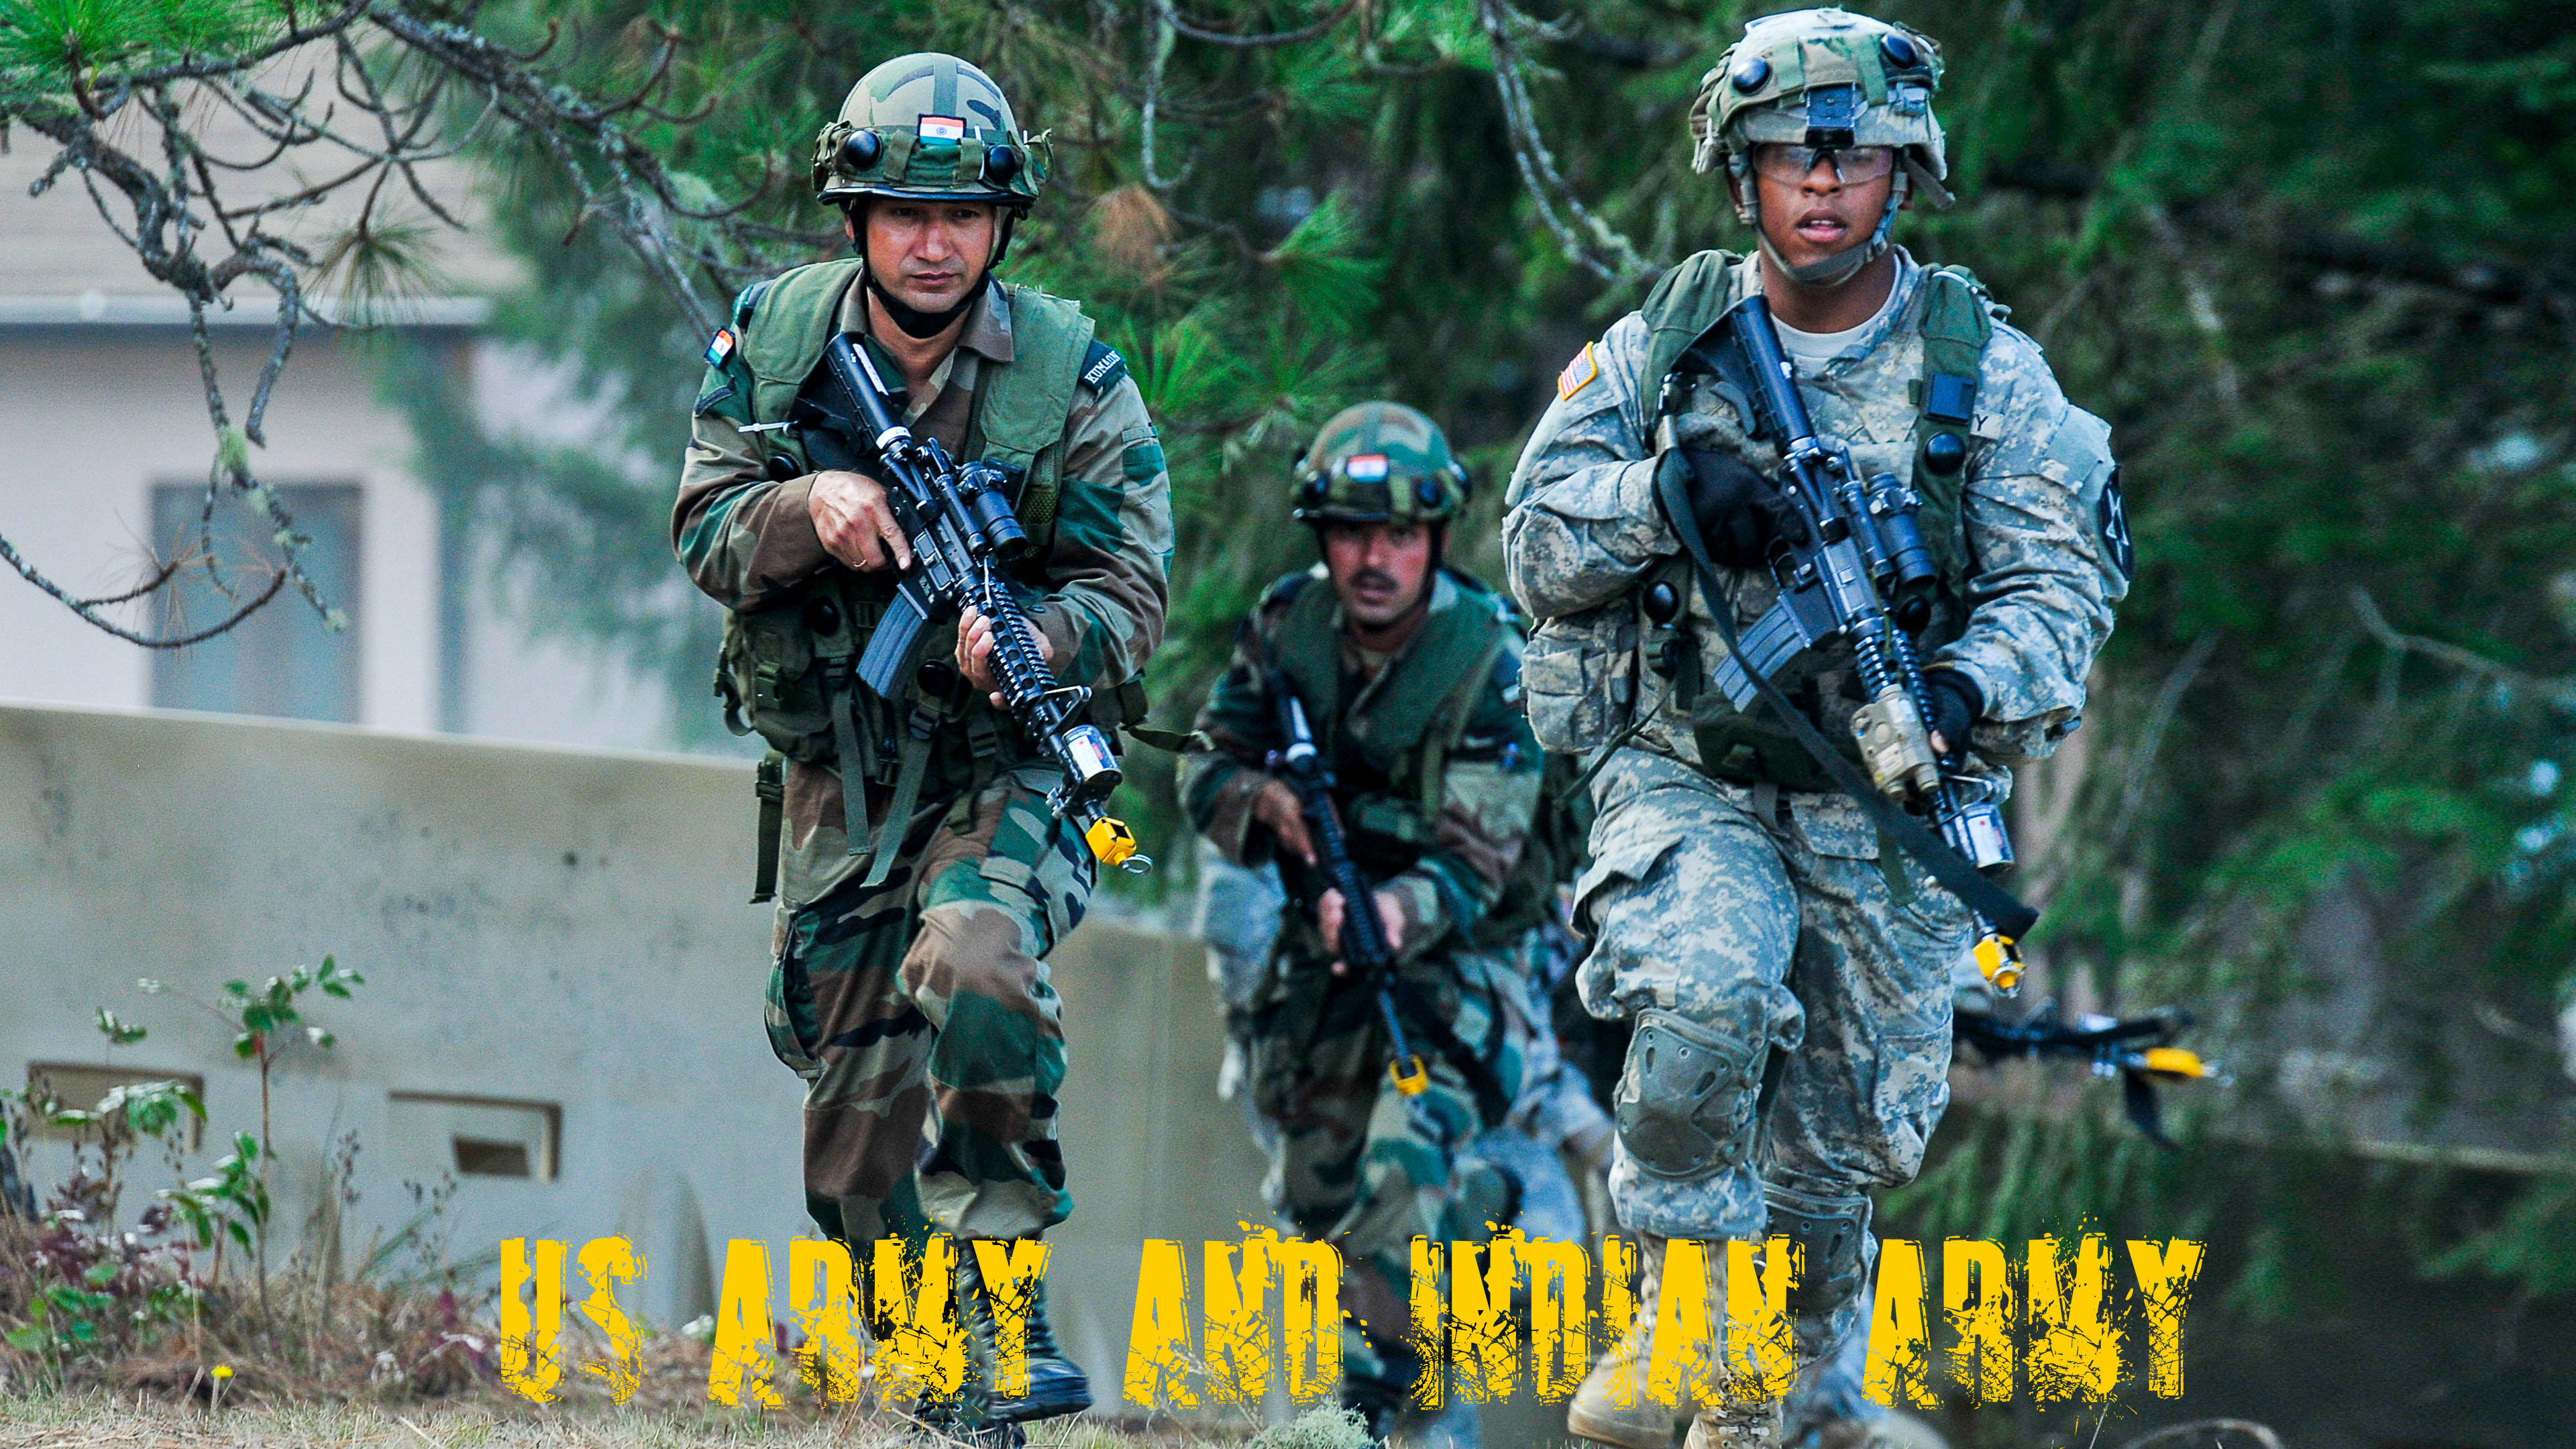 photos de l'armée indienne fond d'écran,armée,soldat,militaire,infanterie,camouflage militaire